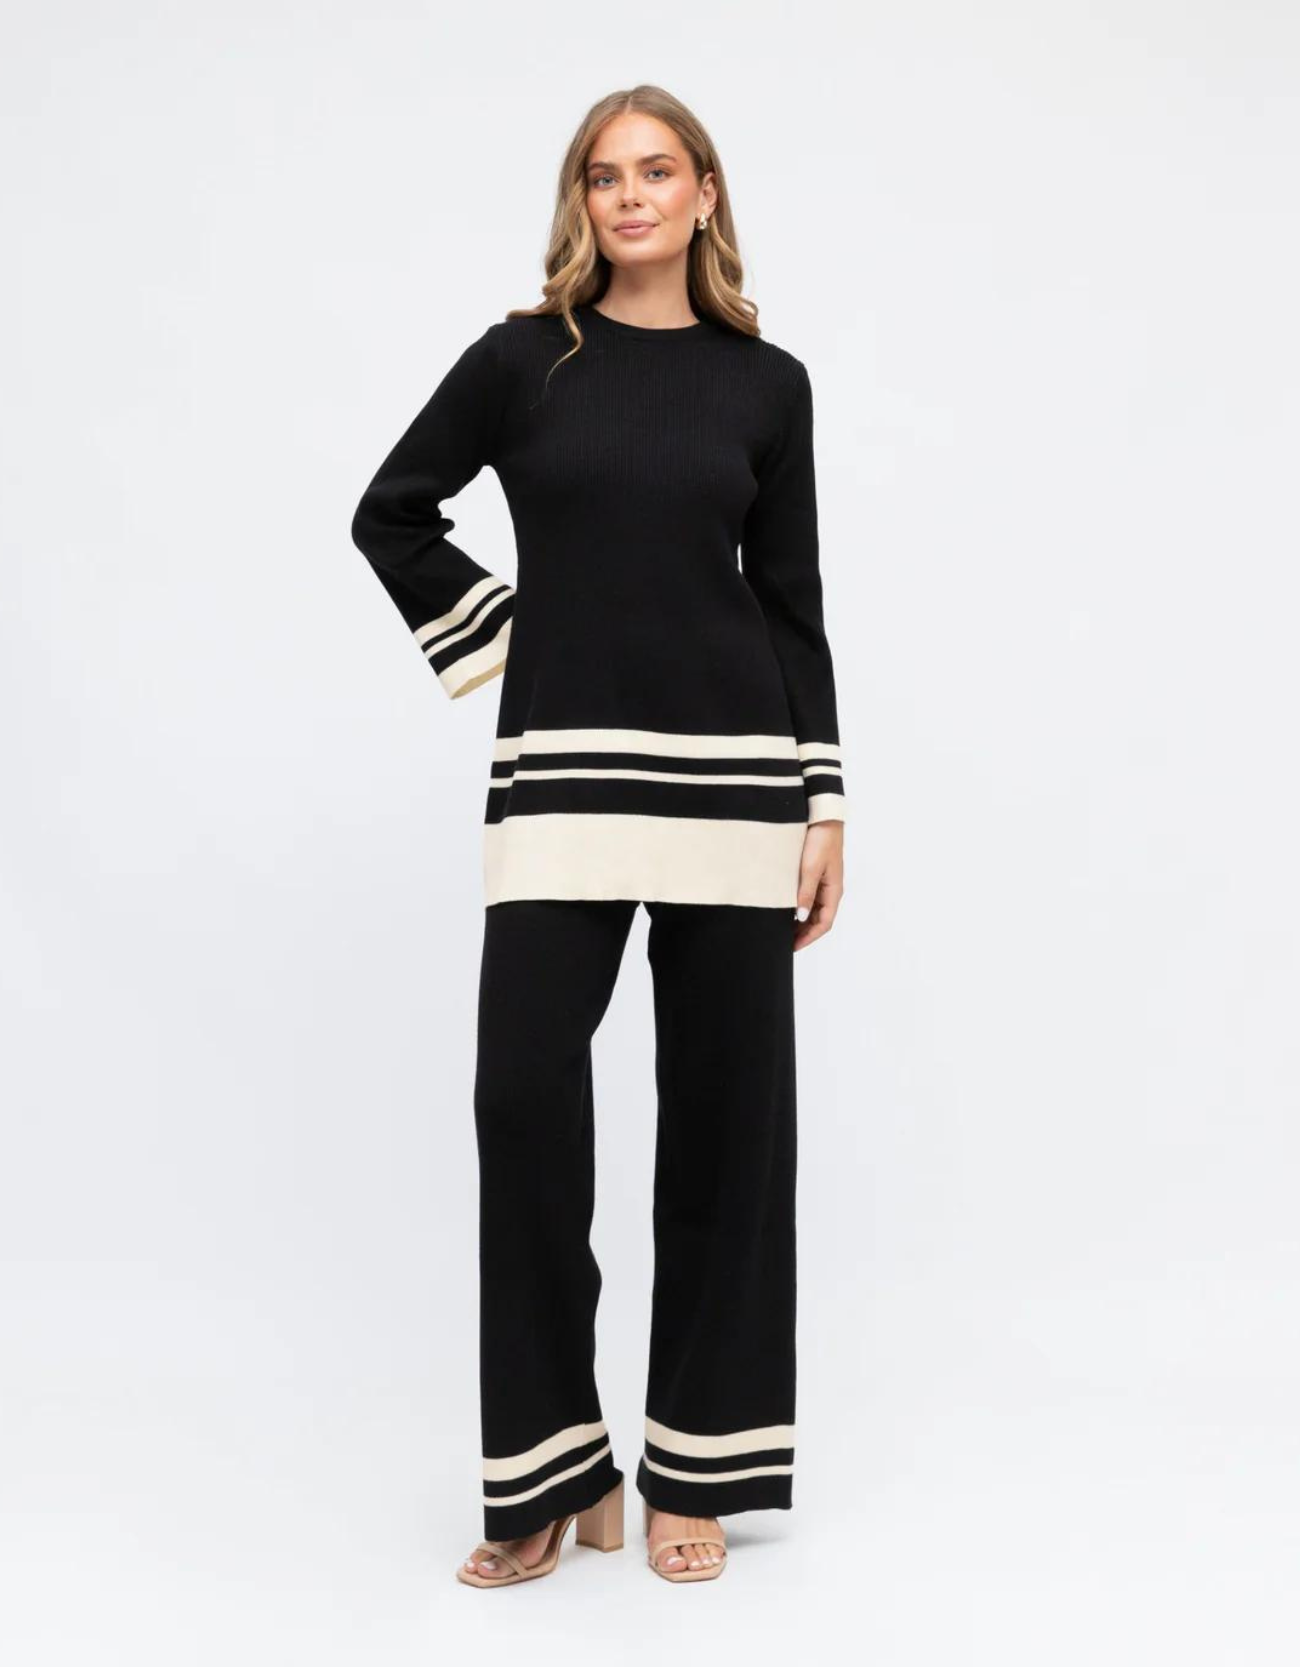 Stripe Knit Pant-Black/Off White